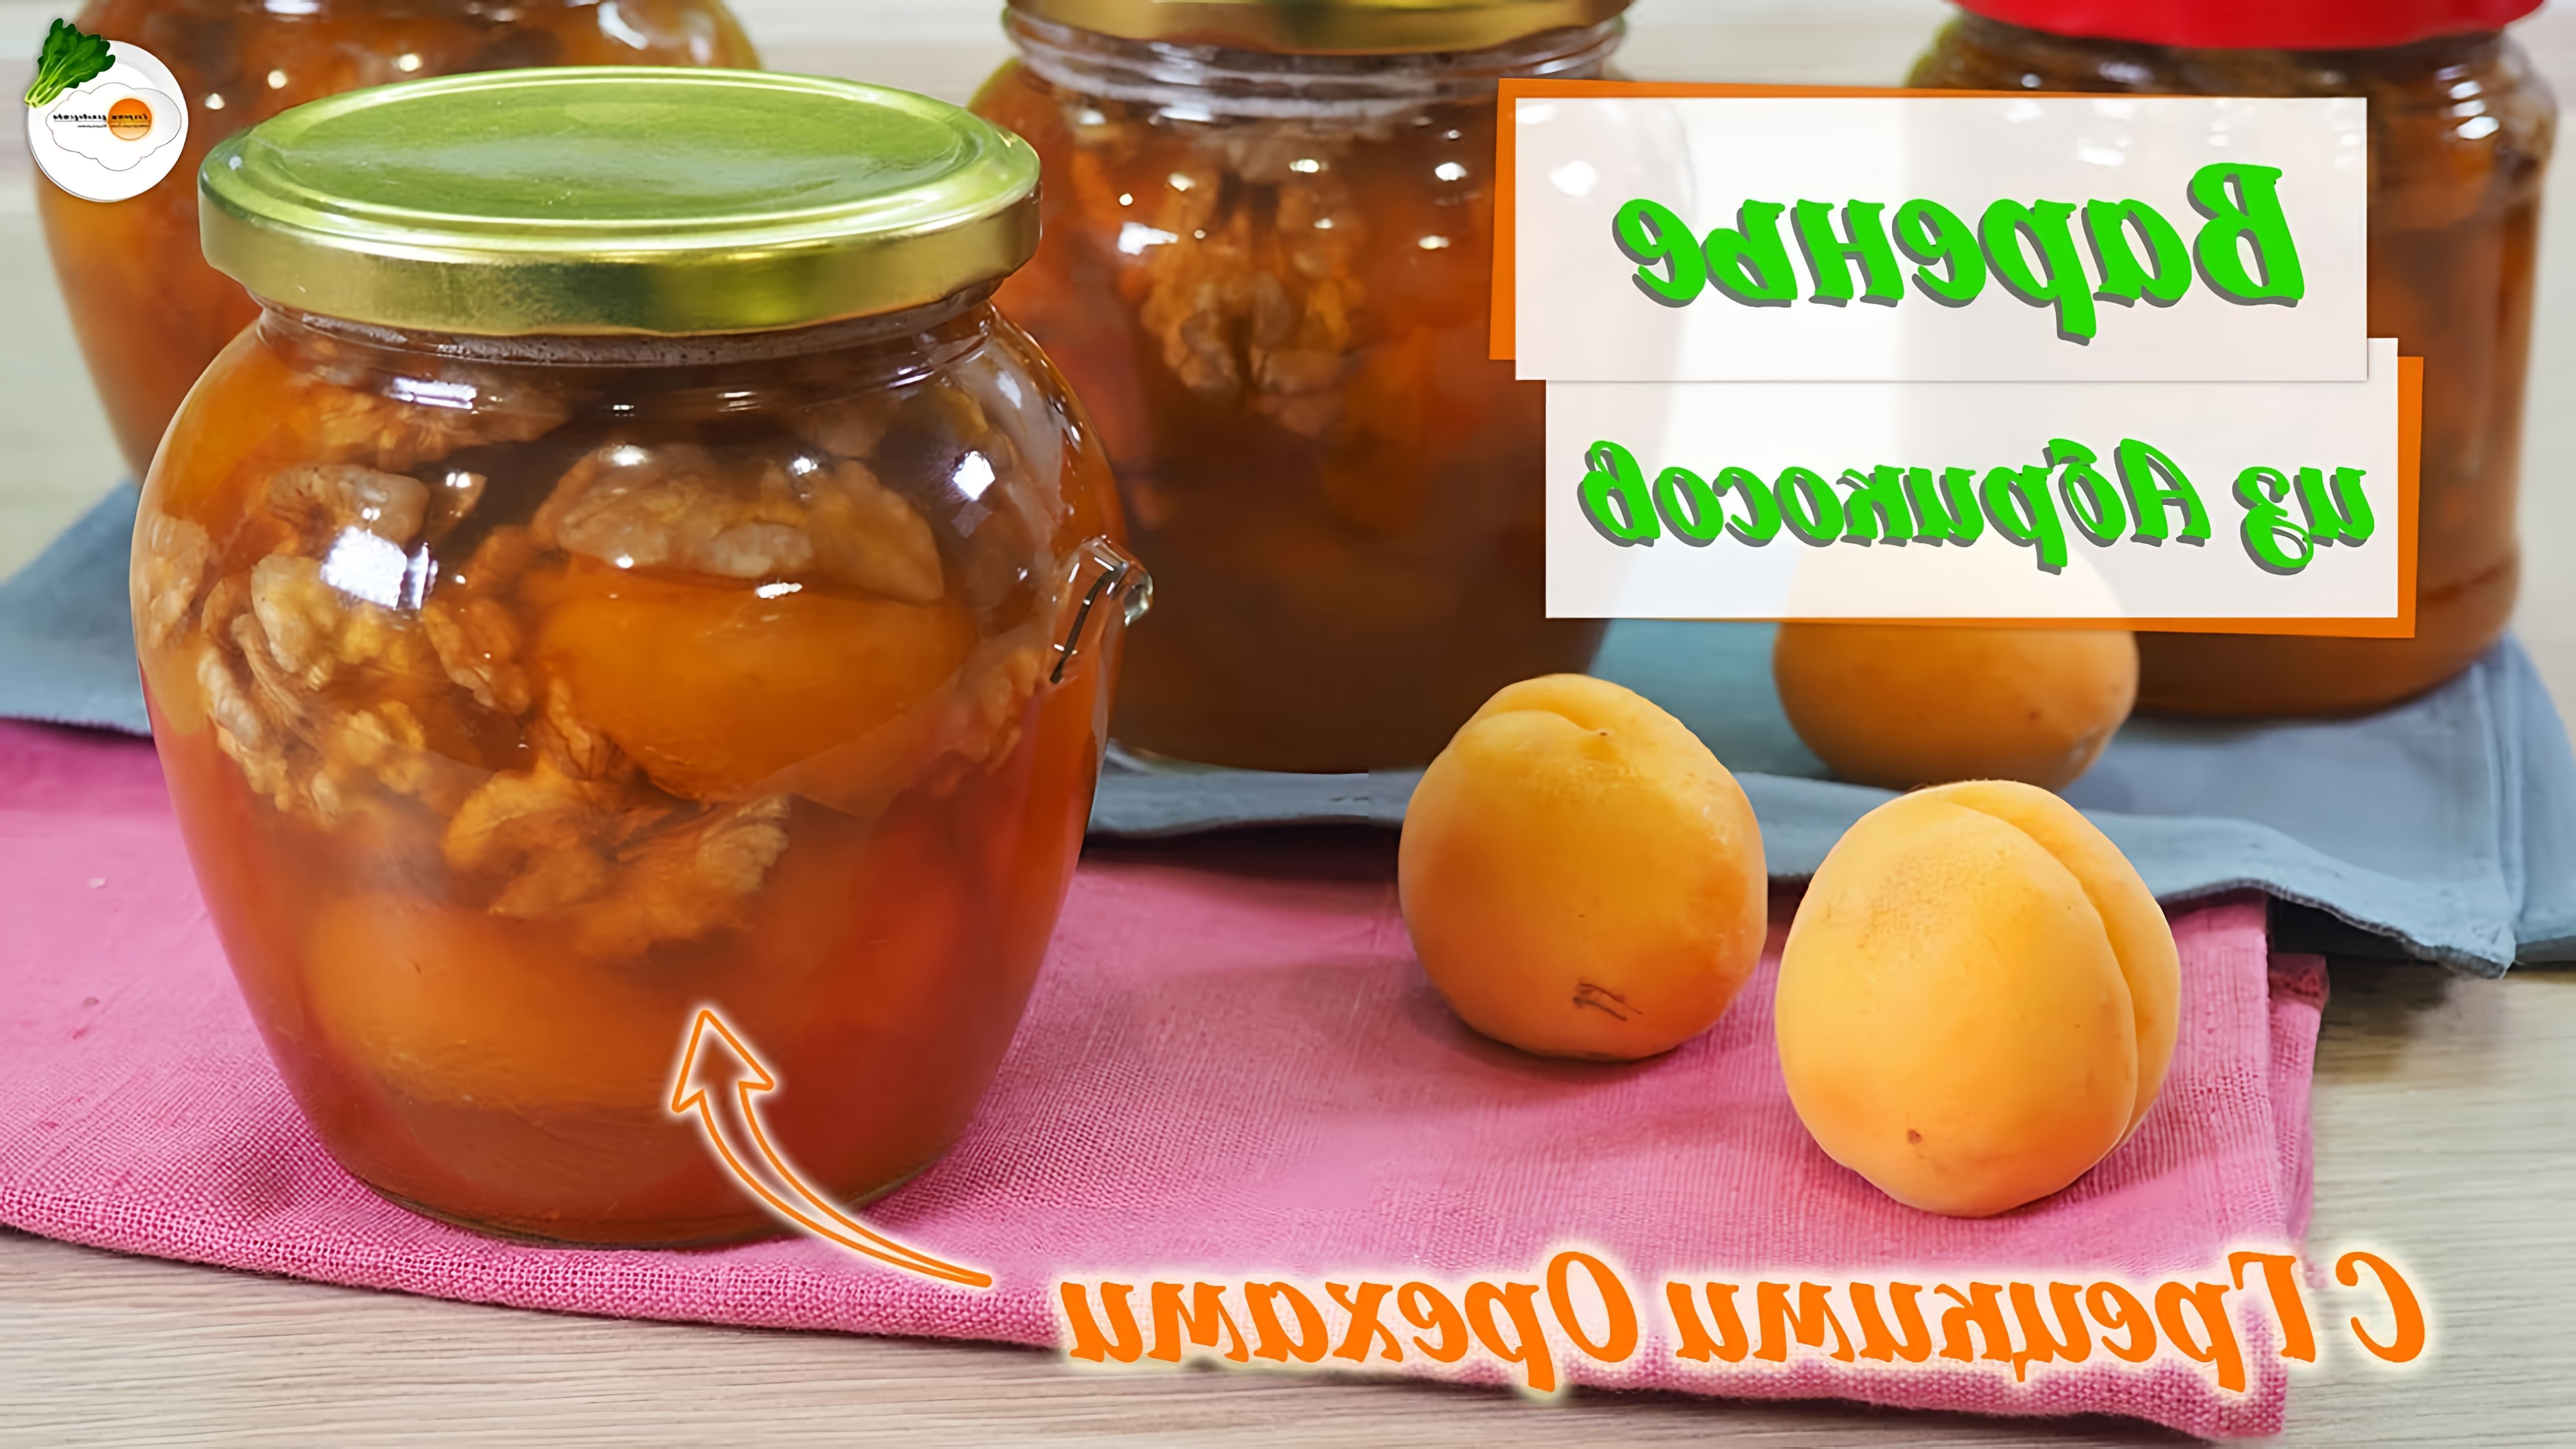 В этом видео демонстрируется процесс приготовления варенья из абрикосов с грецкими орехами